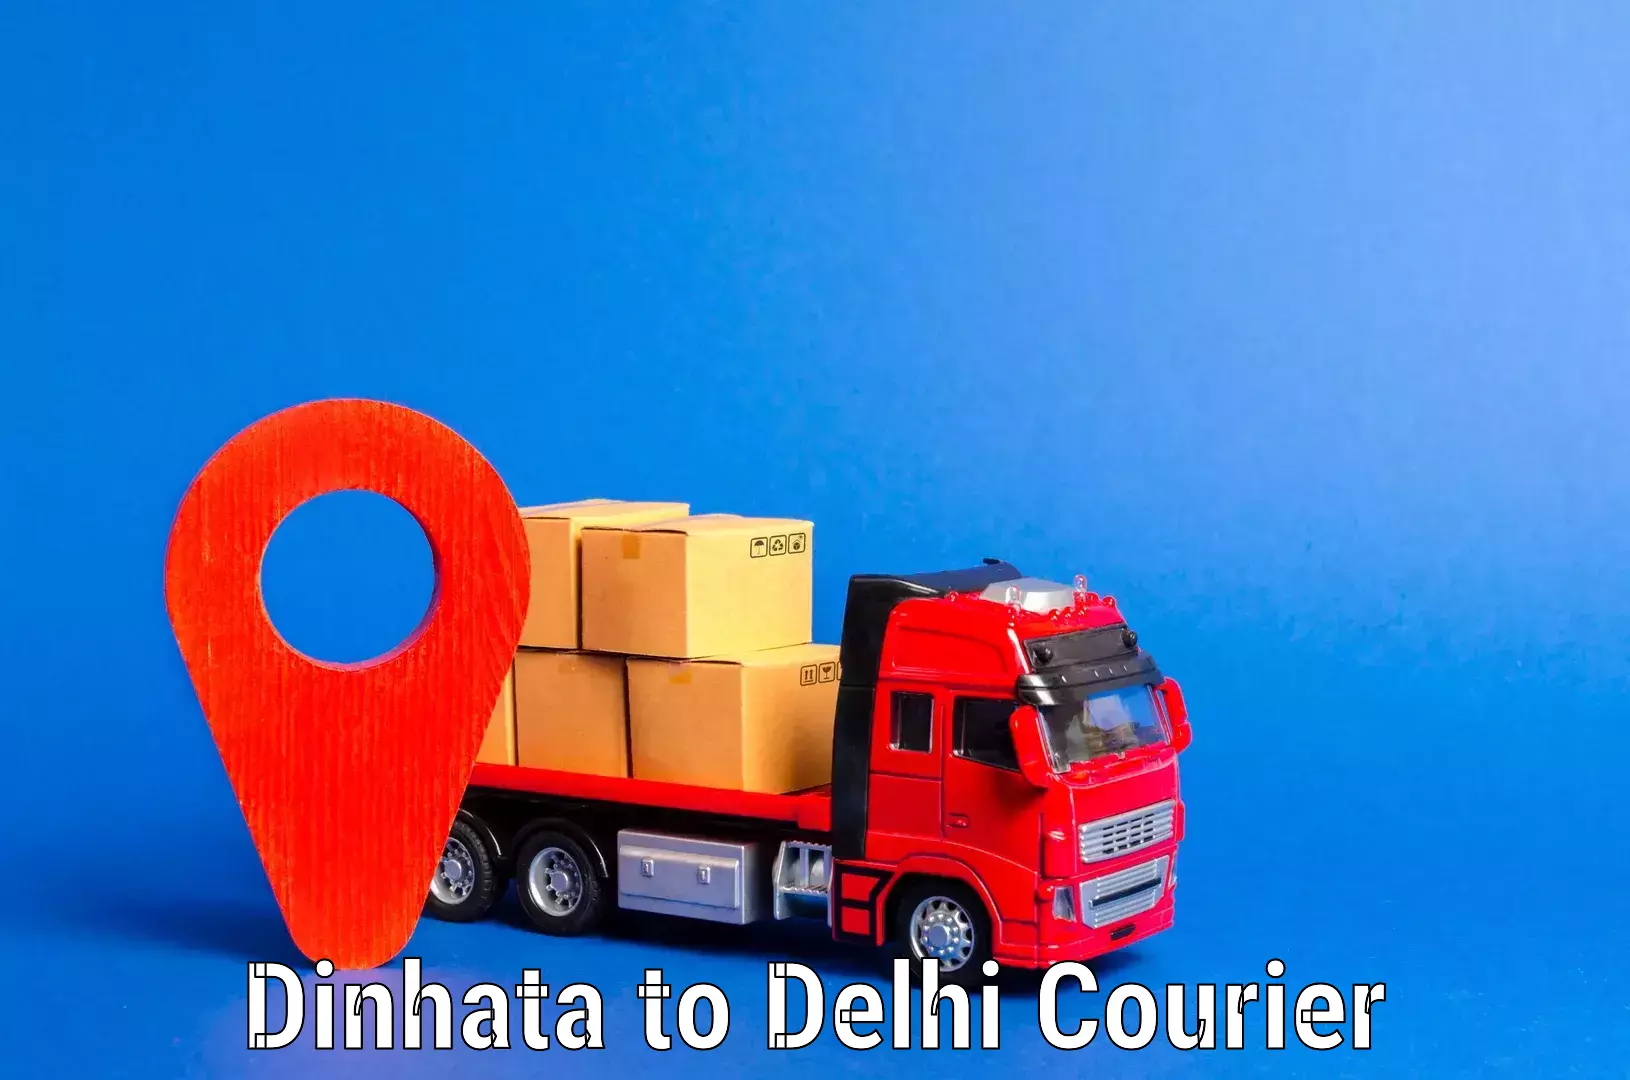 Comprehensive relocation services Dinhata to Delhi